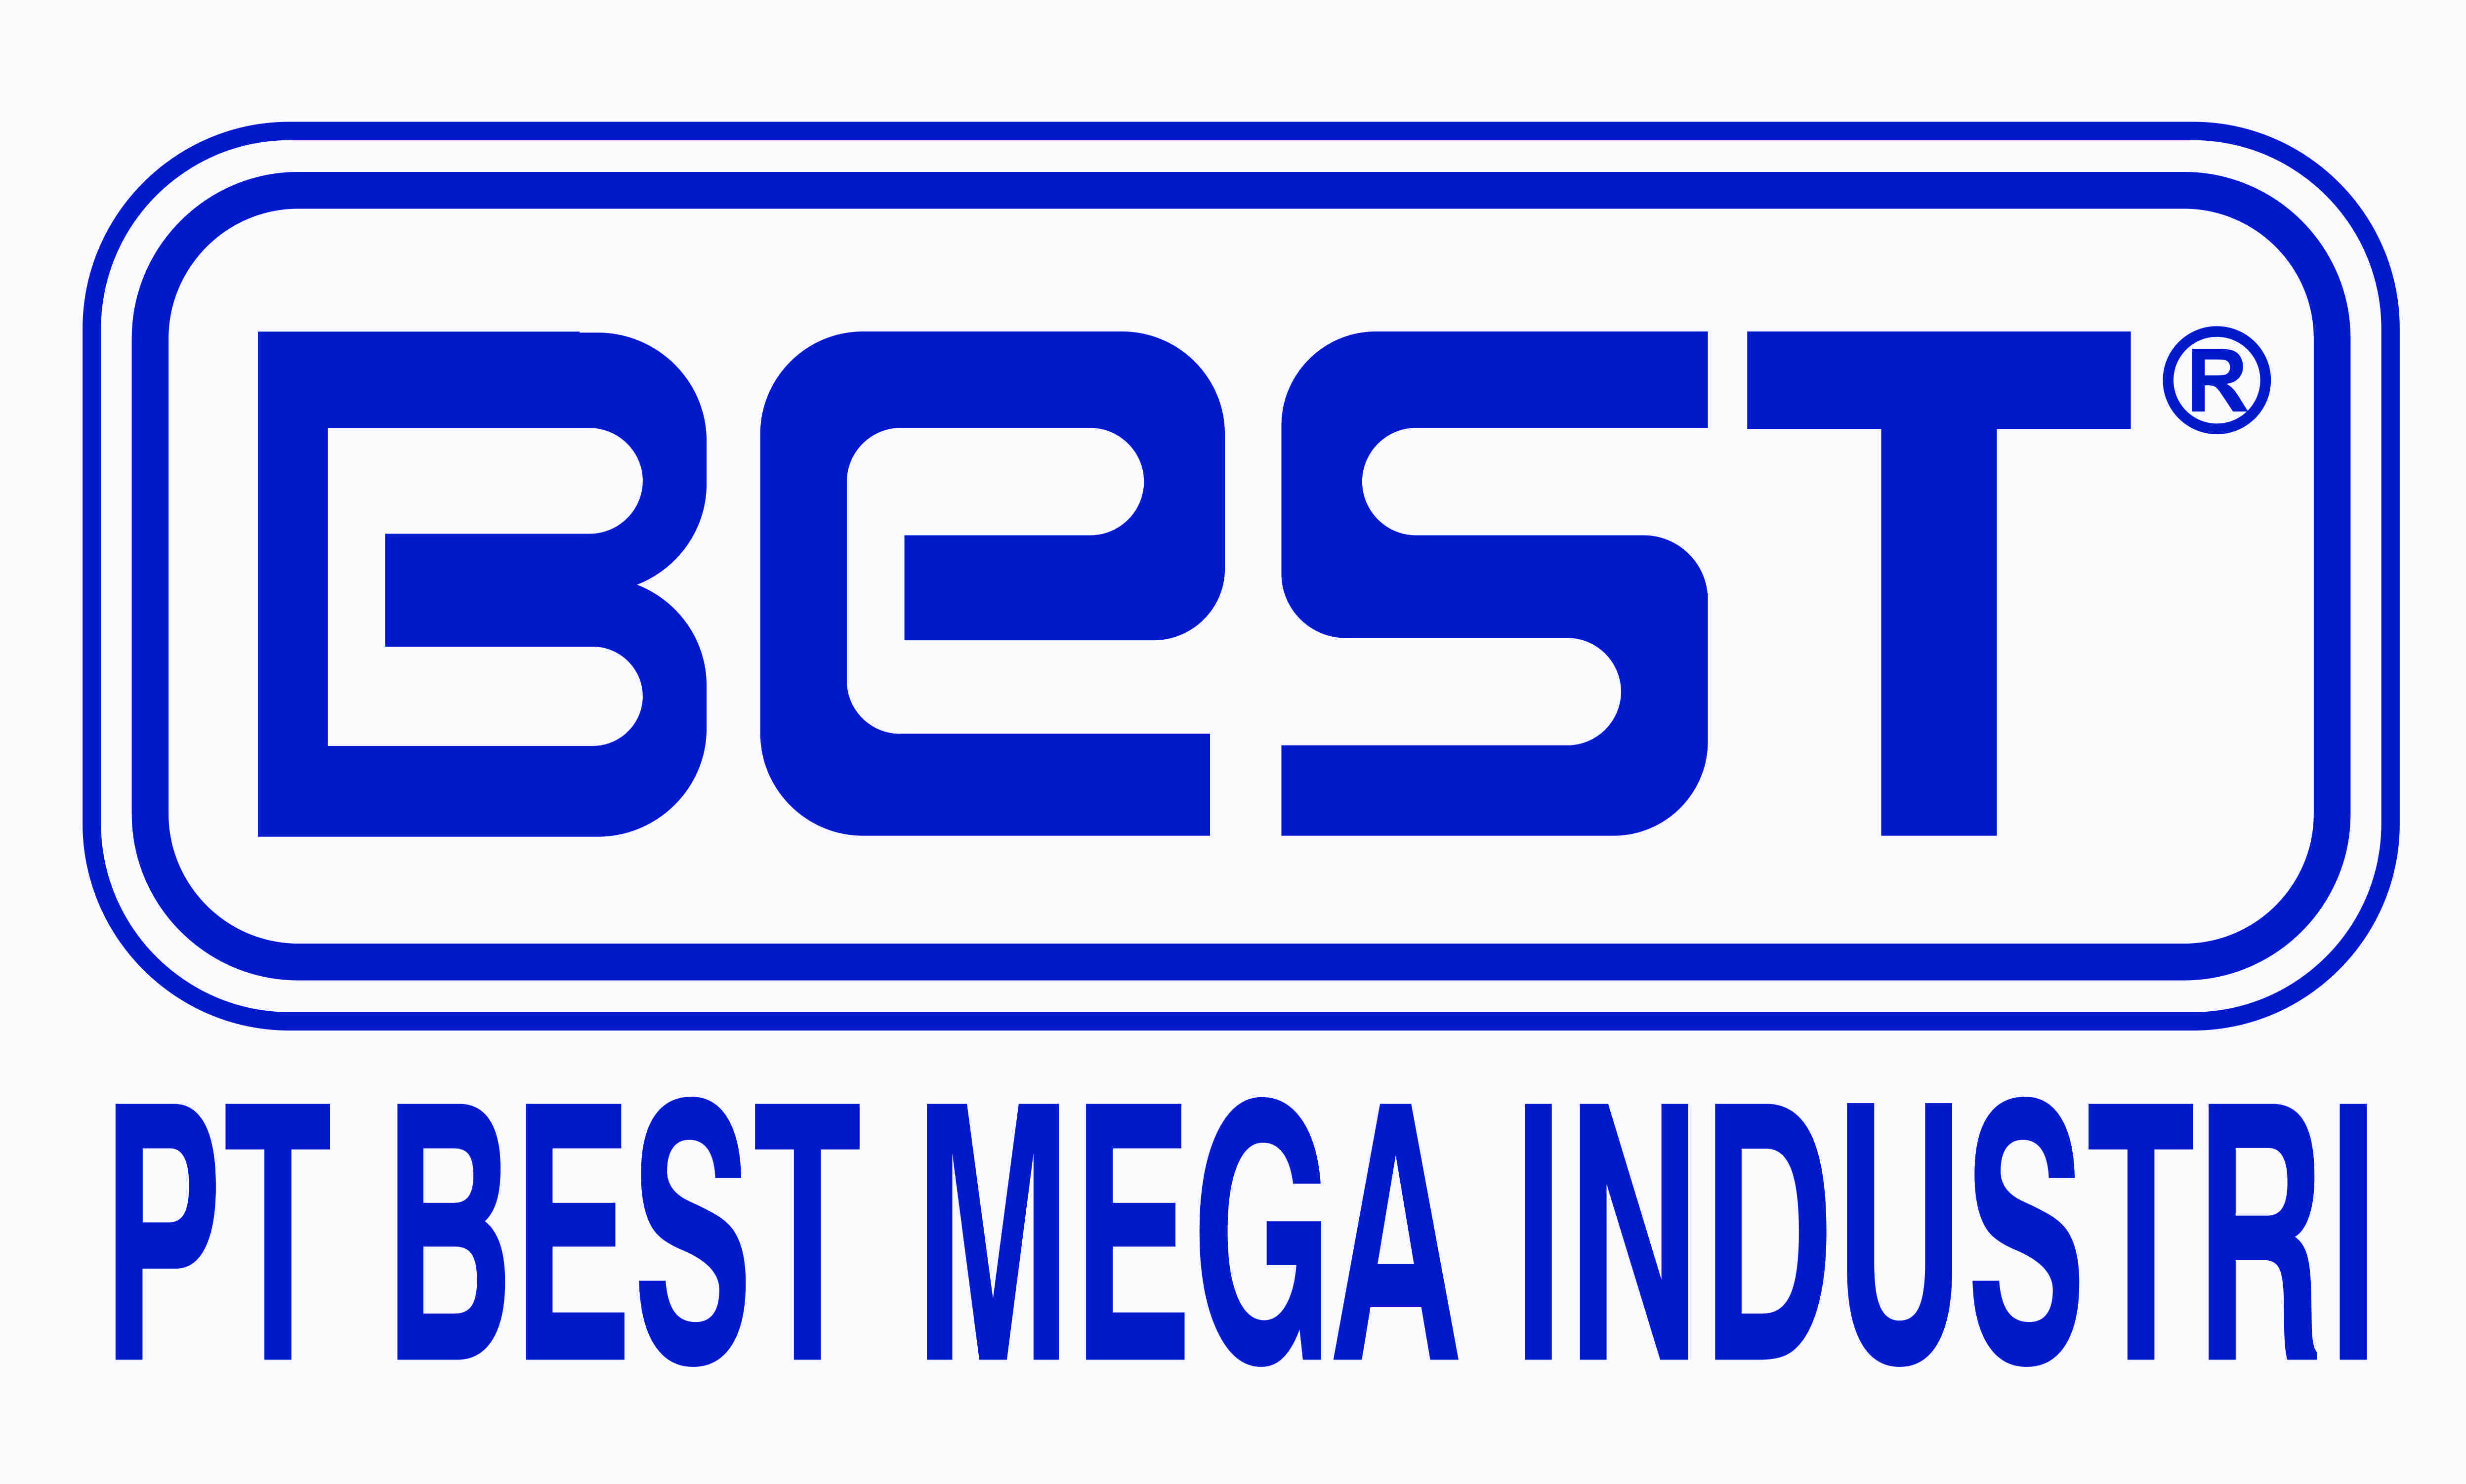 Industri mega pt best PT Best